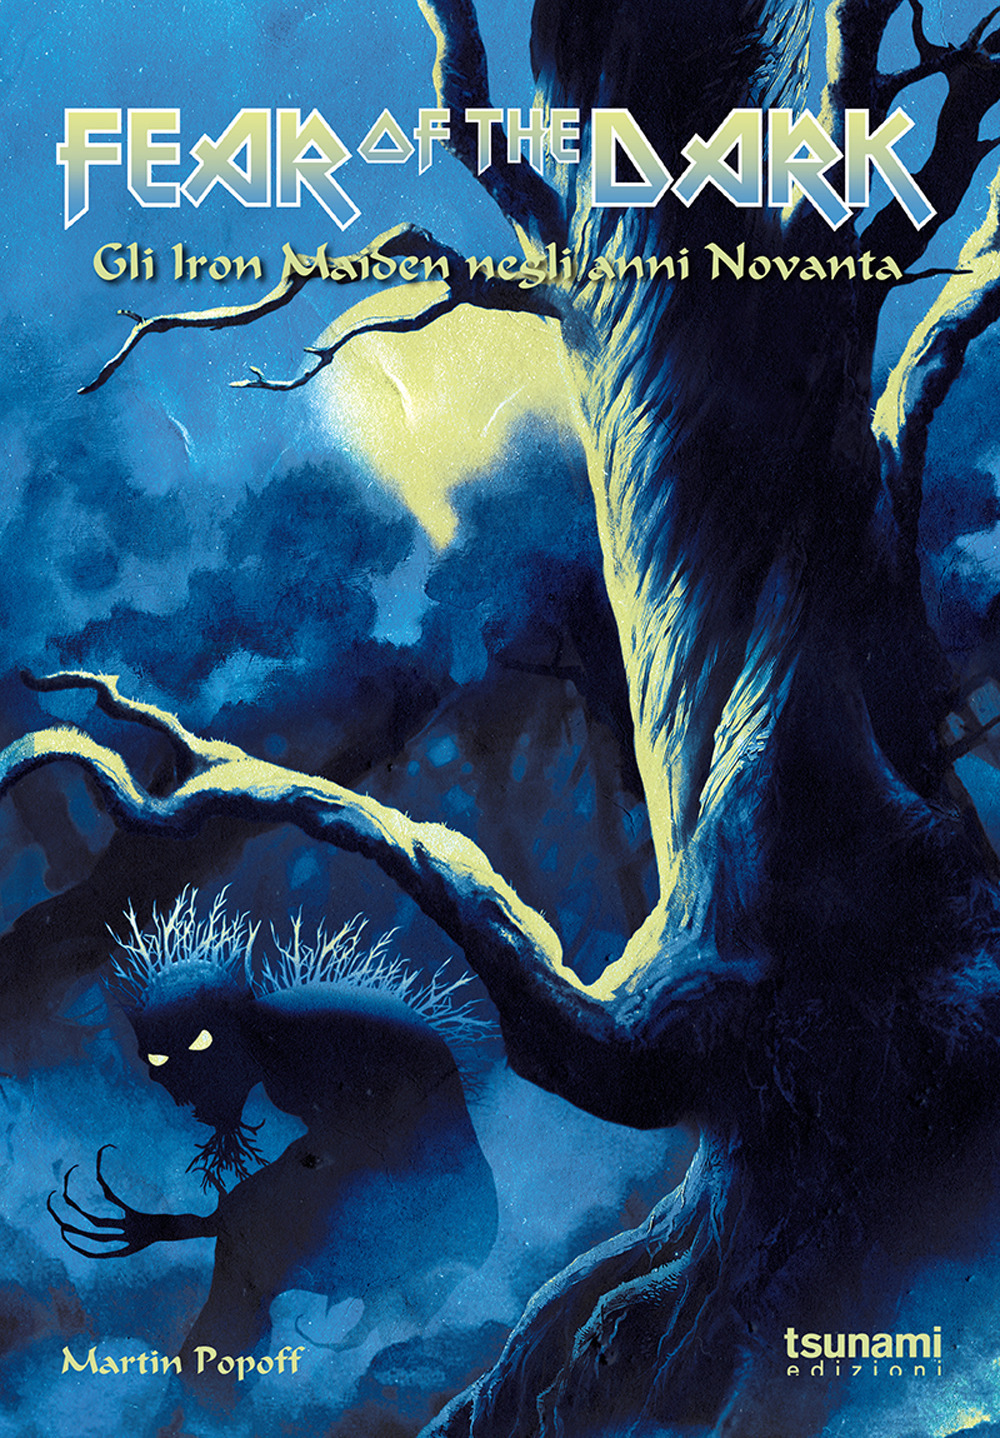 Libri Martin Popoff - Fear Of The Dark. Gli Iron Maiden Negli Anni Novanta NUOVO SIGILLATO, EDIZIONE DEL 19/11/2020 SUBITO DISPONIBILE